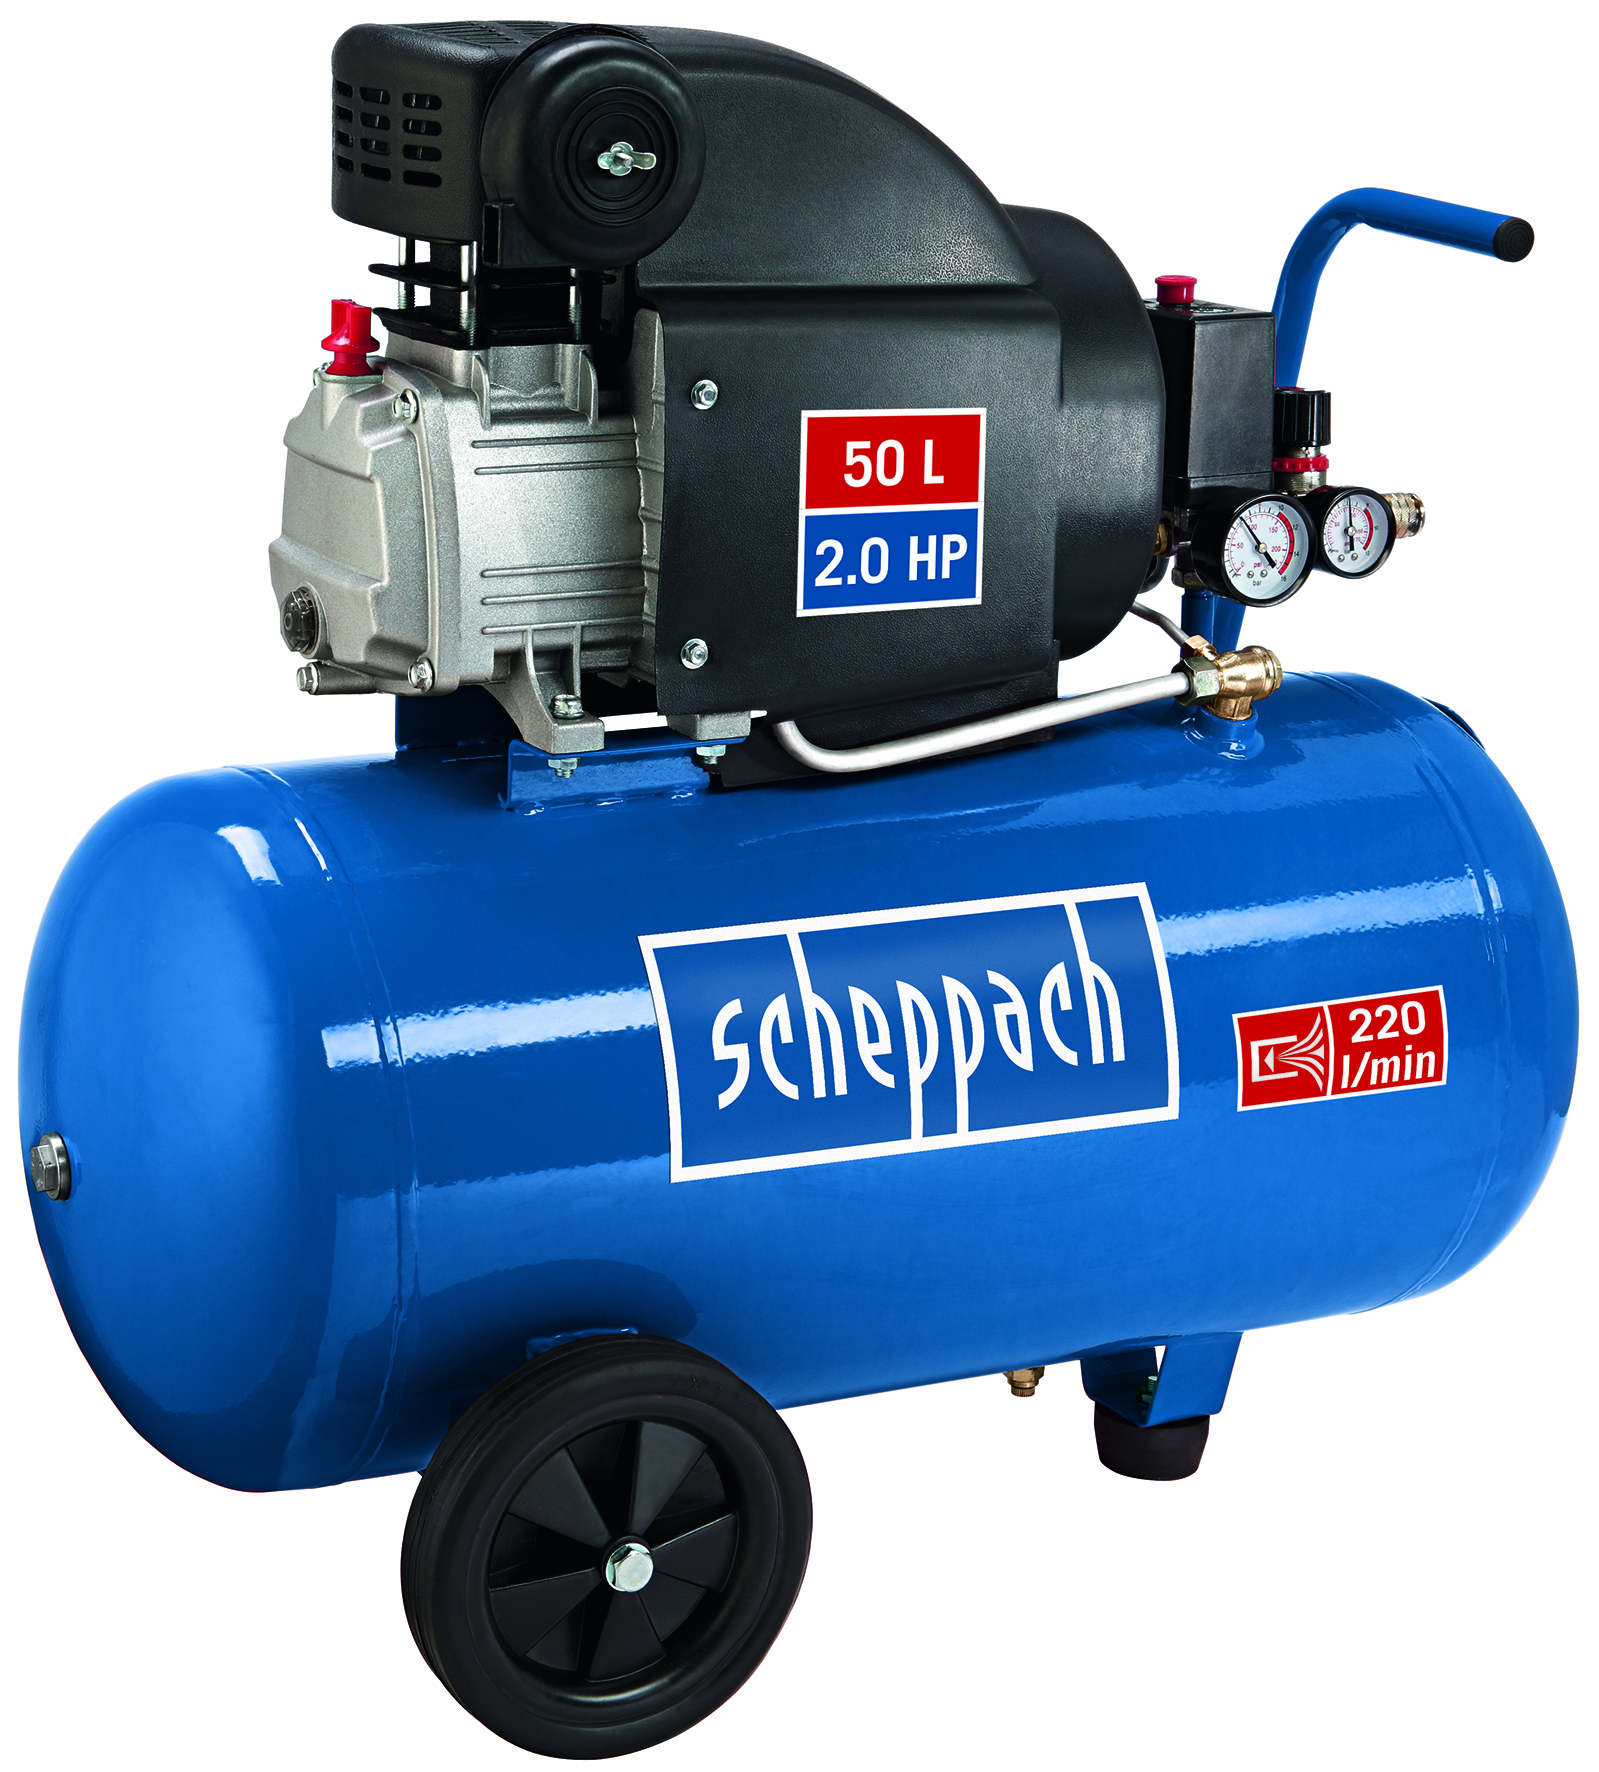 Kompressor HC52DC scheppach - 230V 50Hz 2200W - 50L